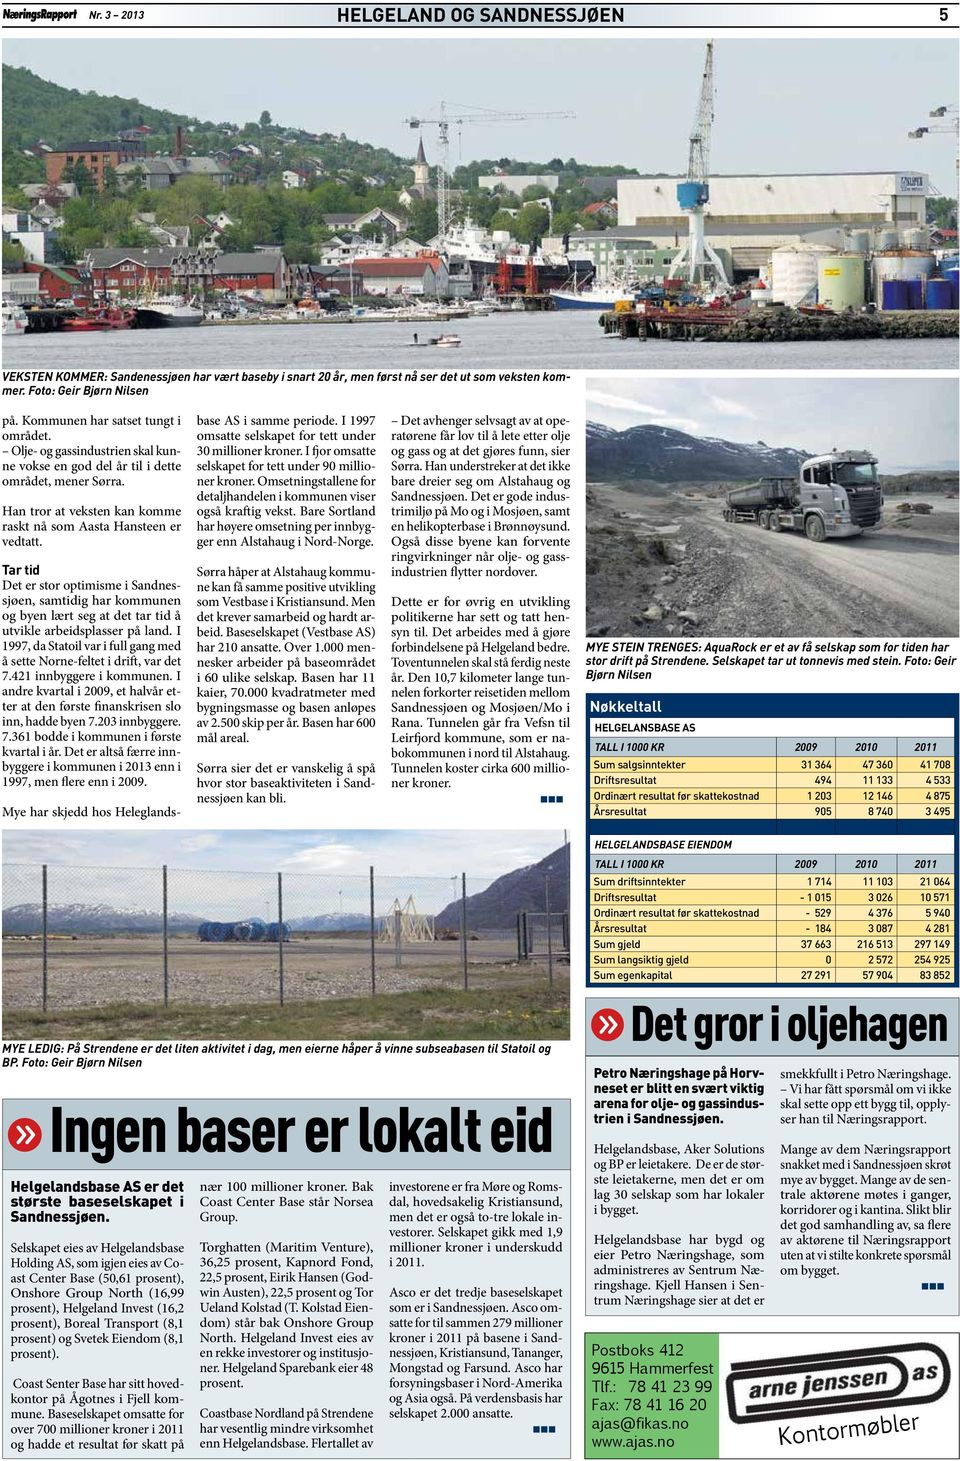 Tar tid Det er stor optimisme i Sandnessjøen, samtidig har kommunen og byen lært seg at det tar tid å utvikle arbeidsplasser på land.